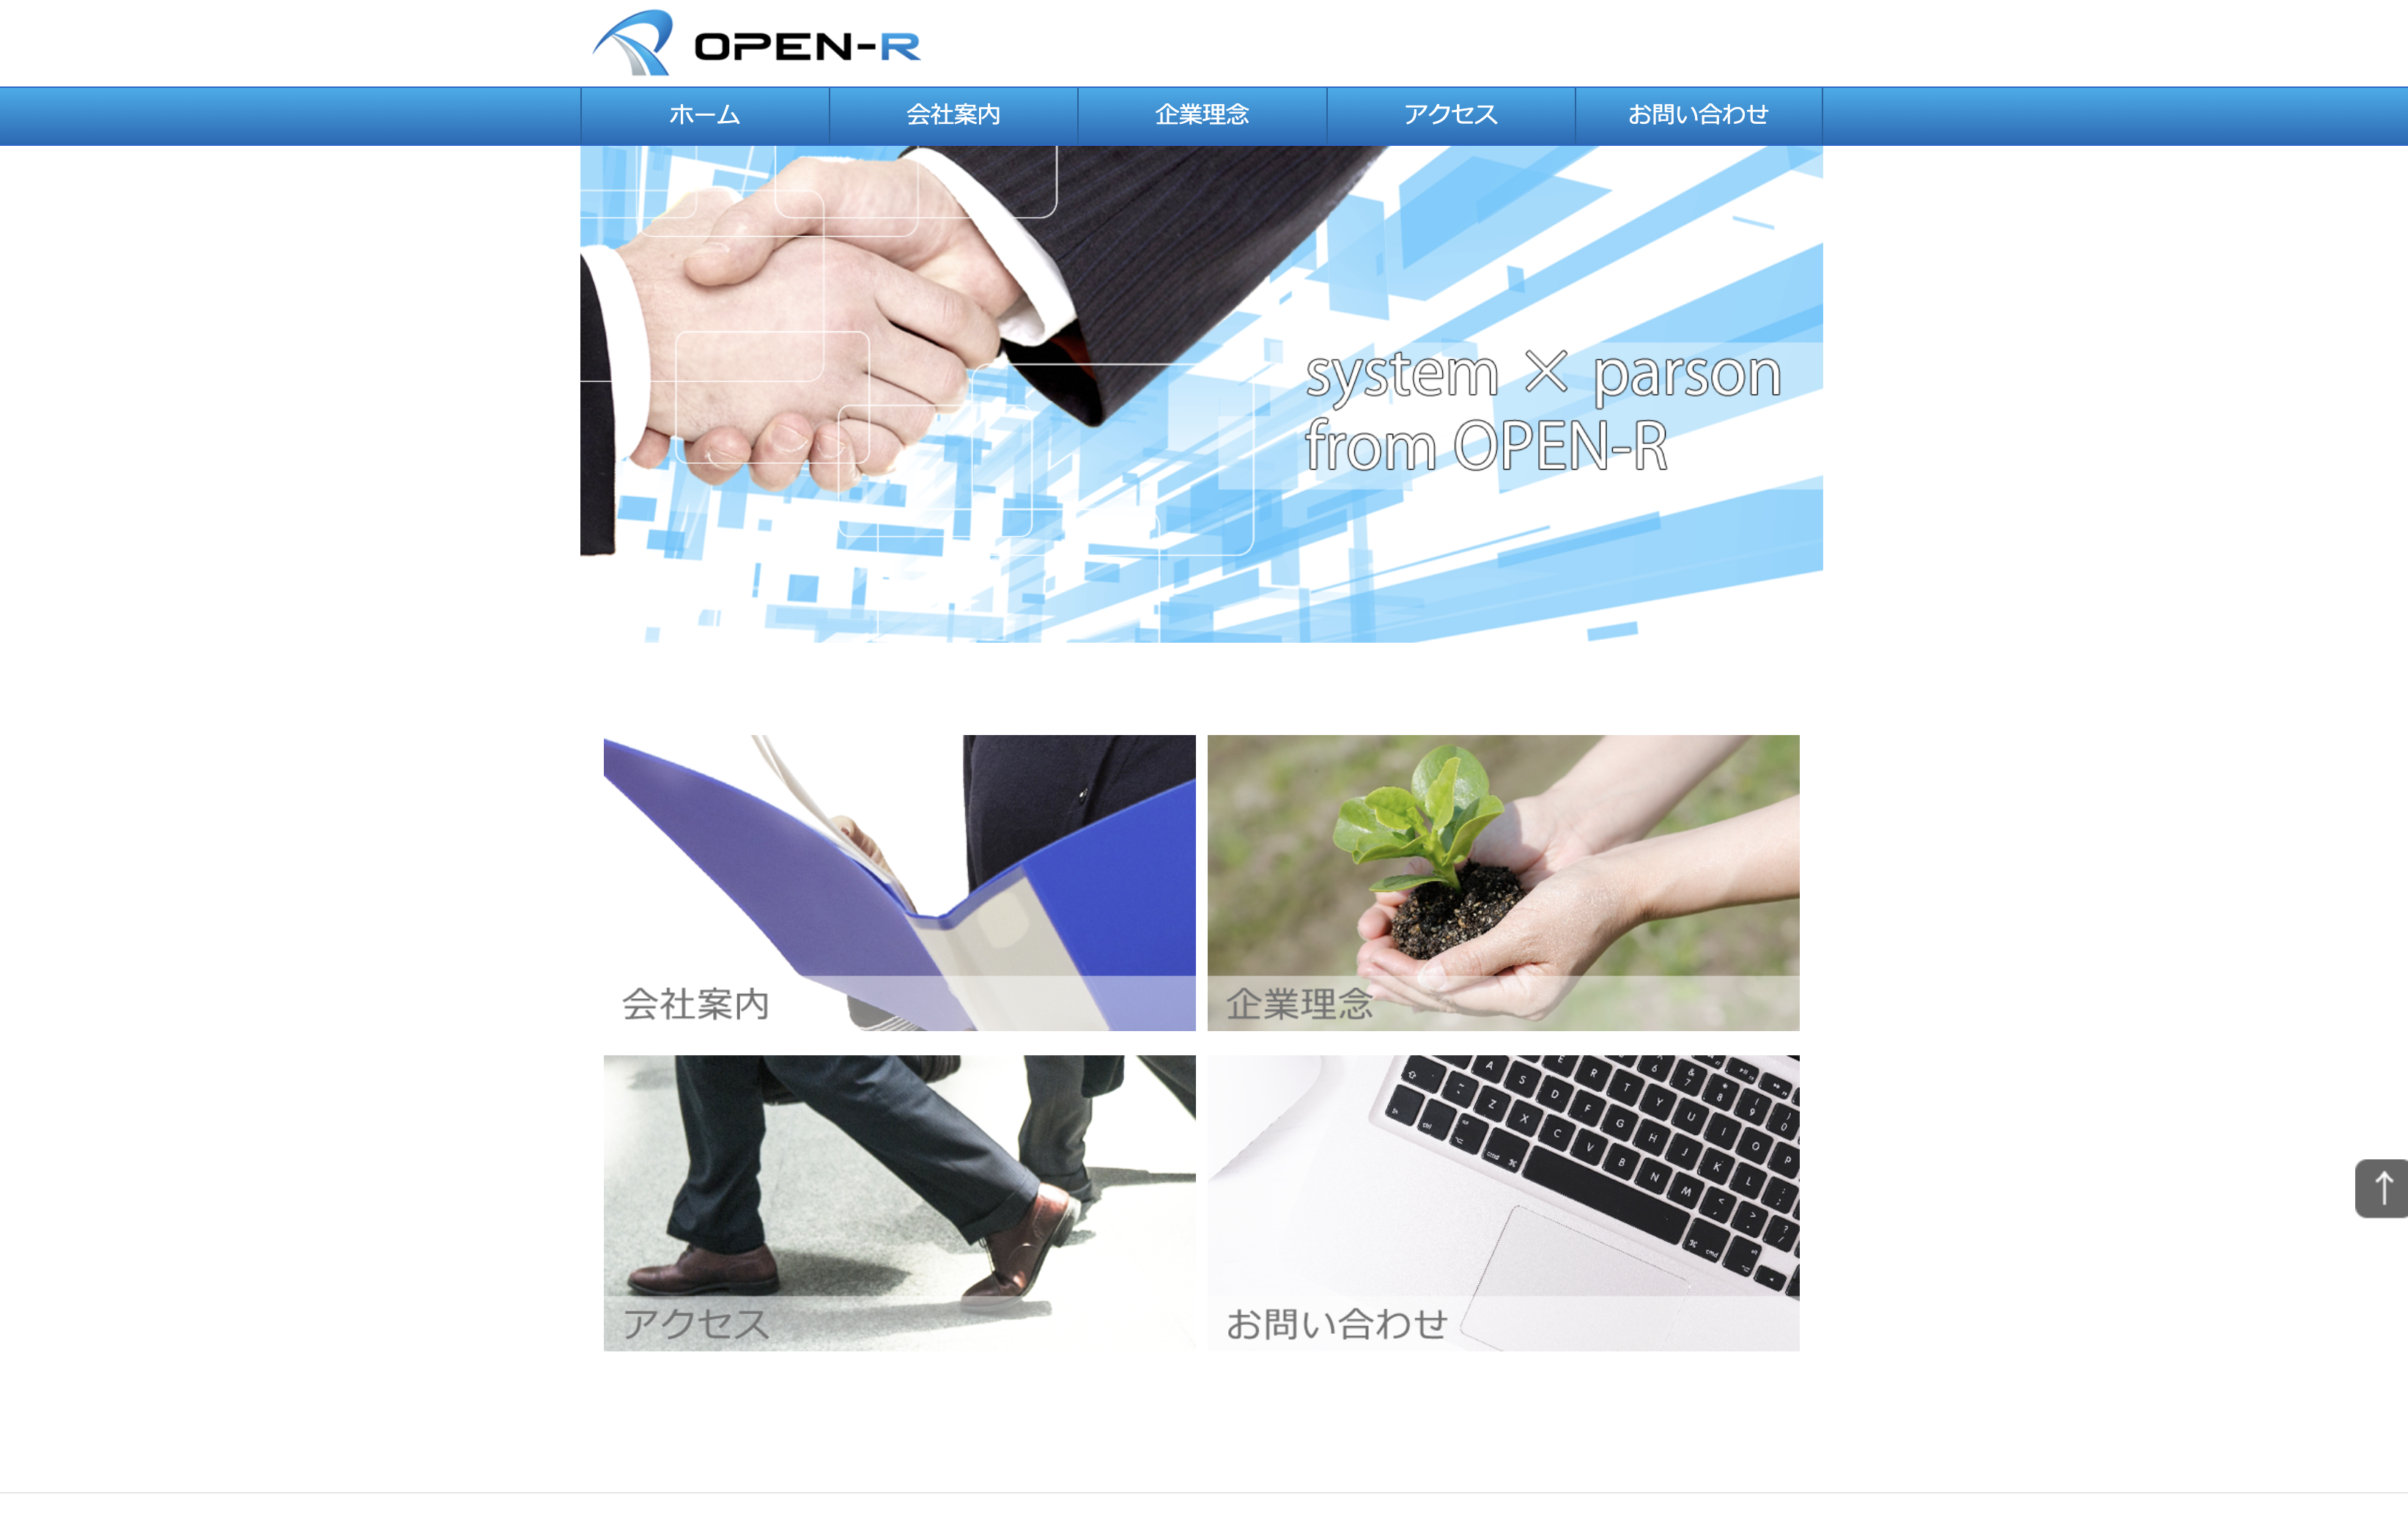 株式会社 OPEN-Rの株式会社OPEN-R:システム開発サービス